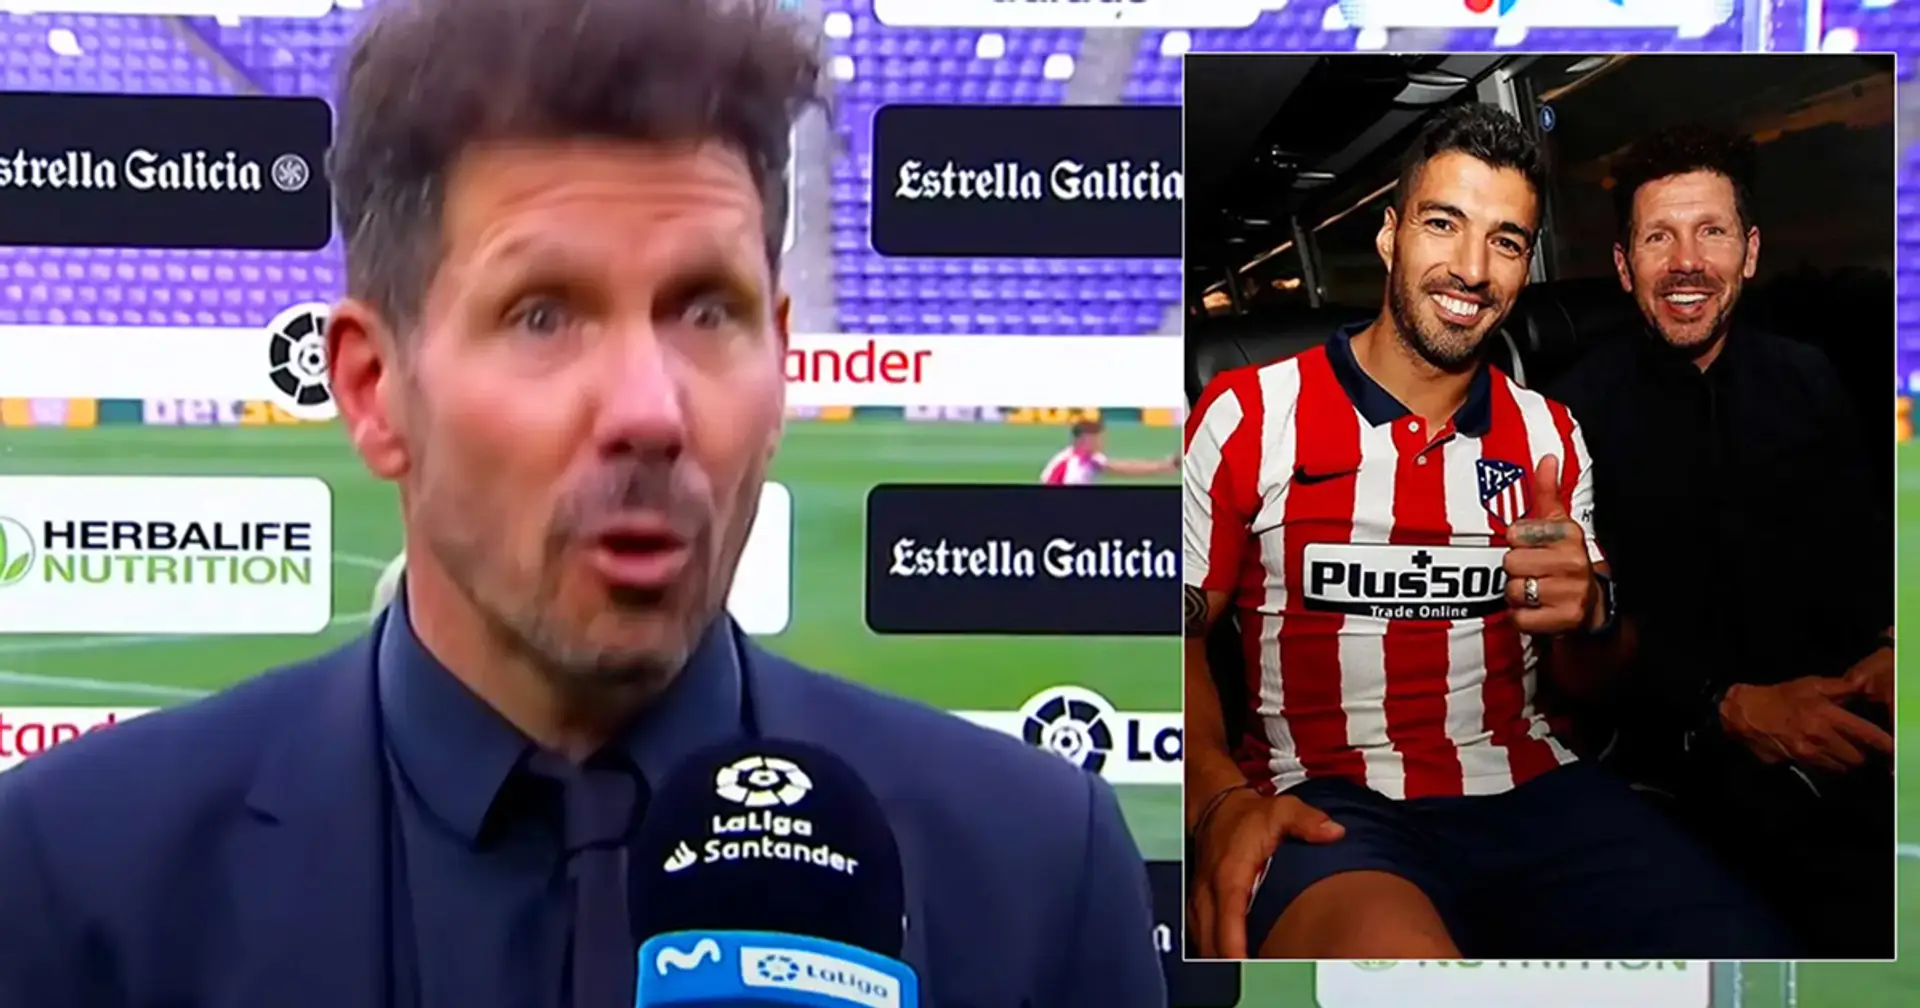 "Ich lachte": Diego Simeone enthüllt seine Reaktion, als er erfuhr, dass Barca bereit ist, Luis Suarez zu verkaufen